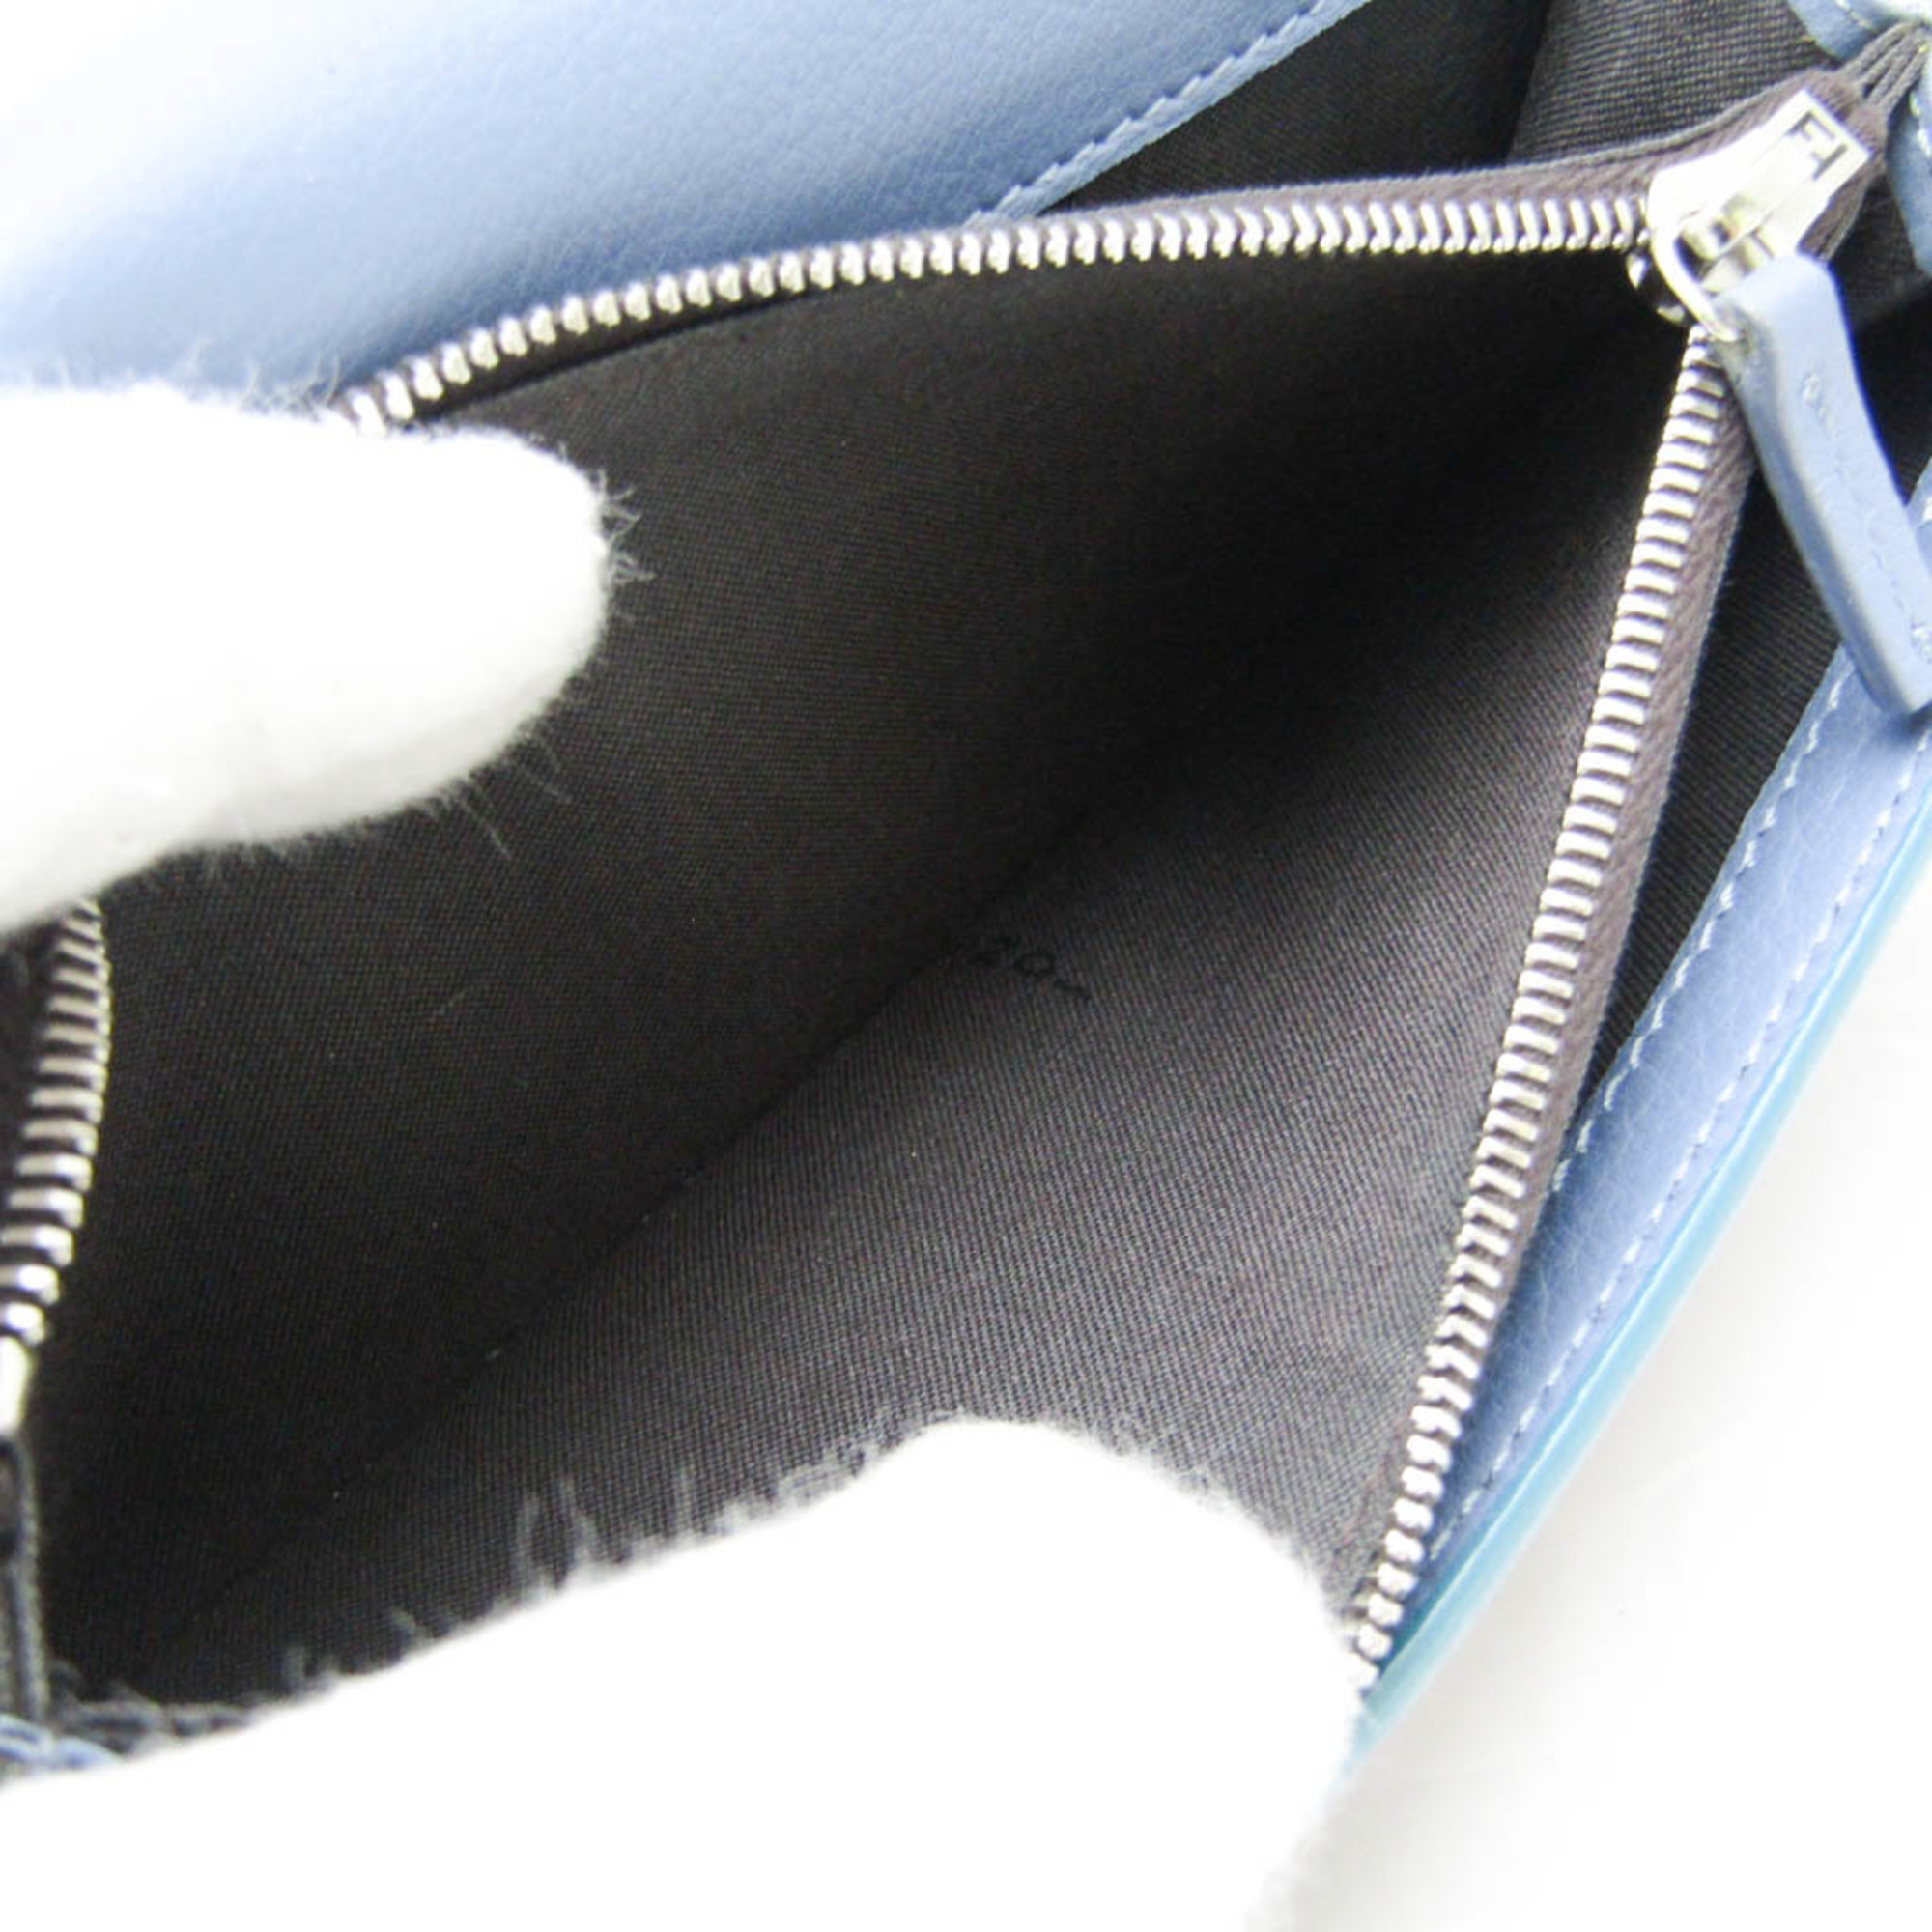 フェンディ(Fendi) ピーカブー 8M0308 メンズ,レディース レザー 長財布（二つ折り） ブルー,ボルドー